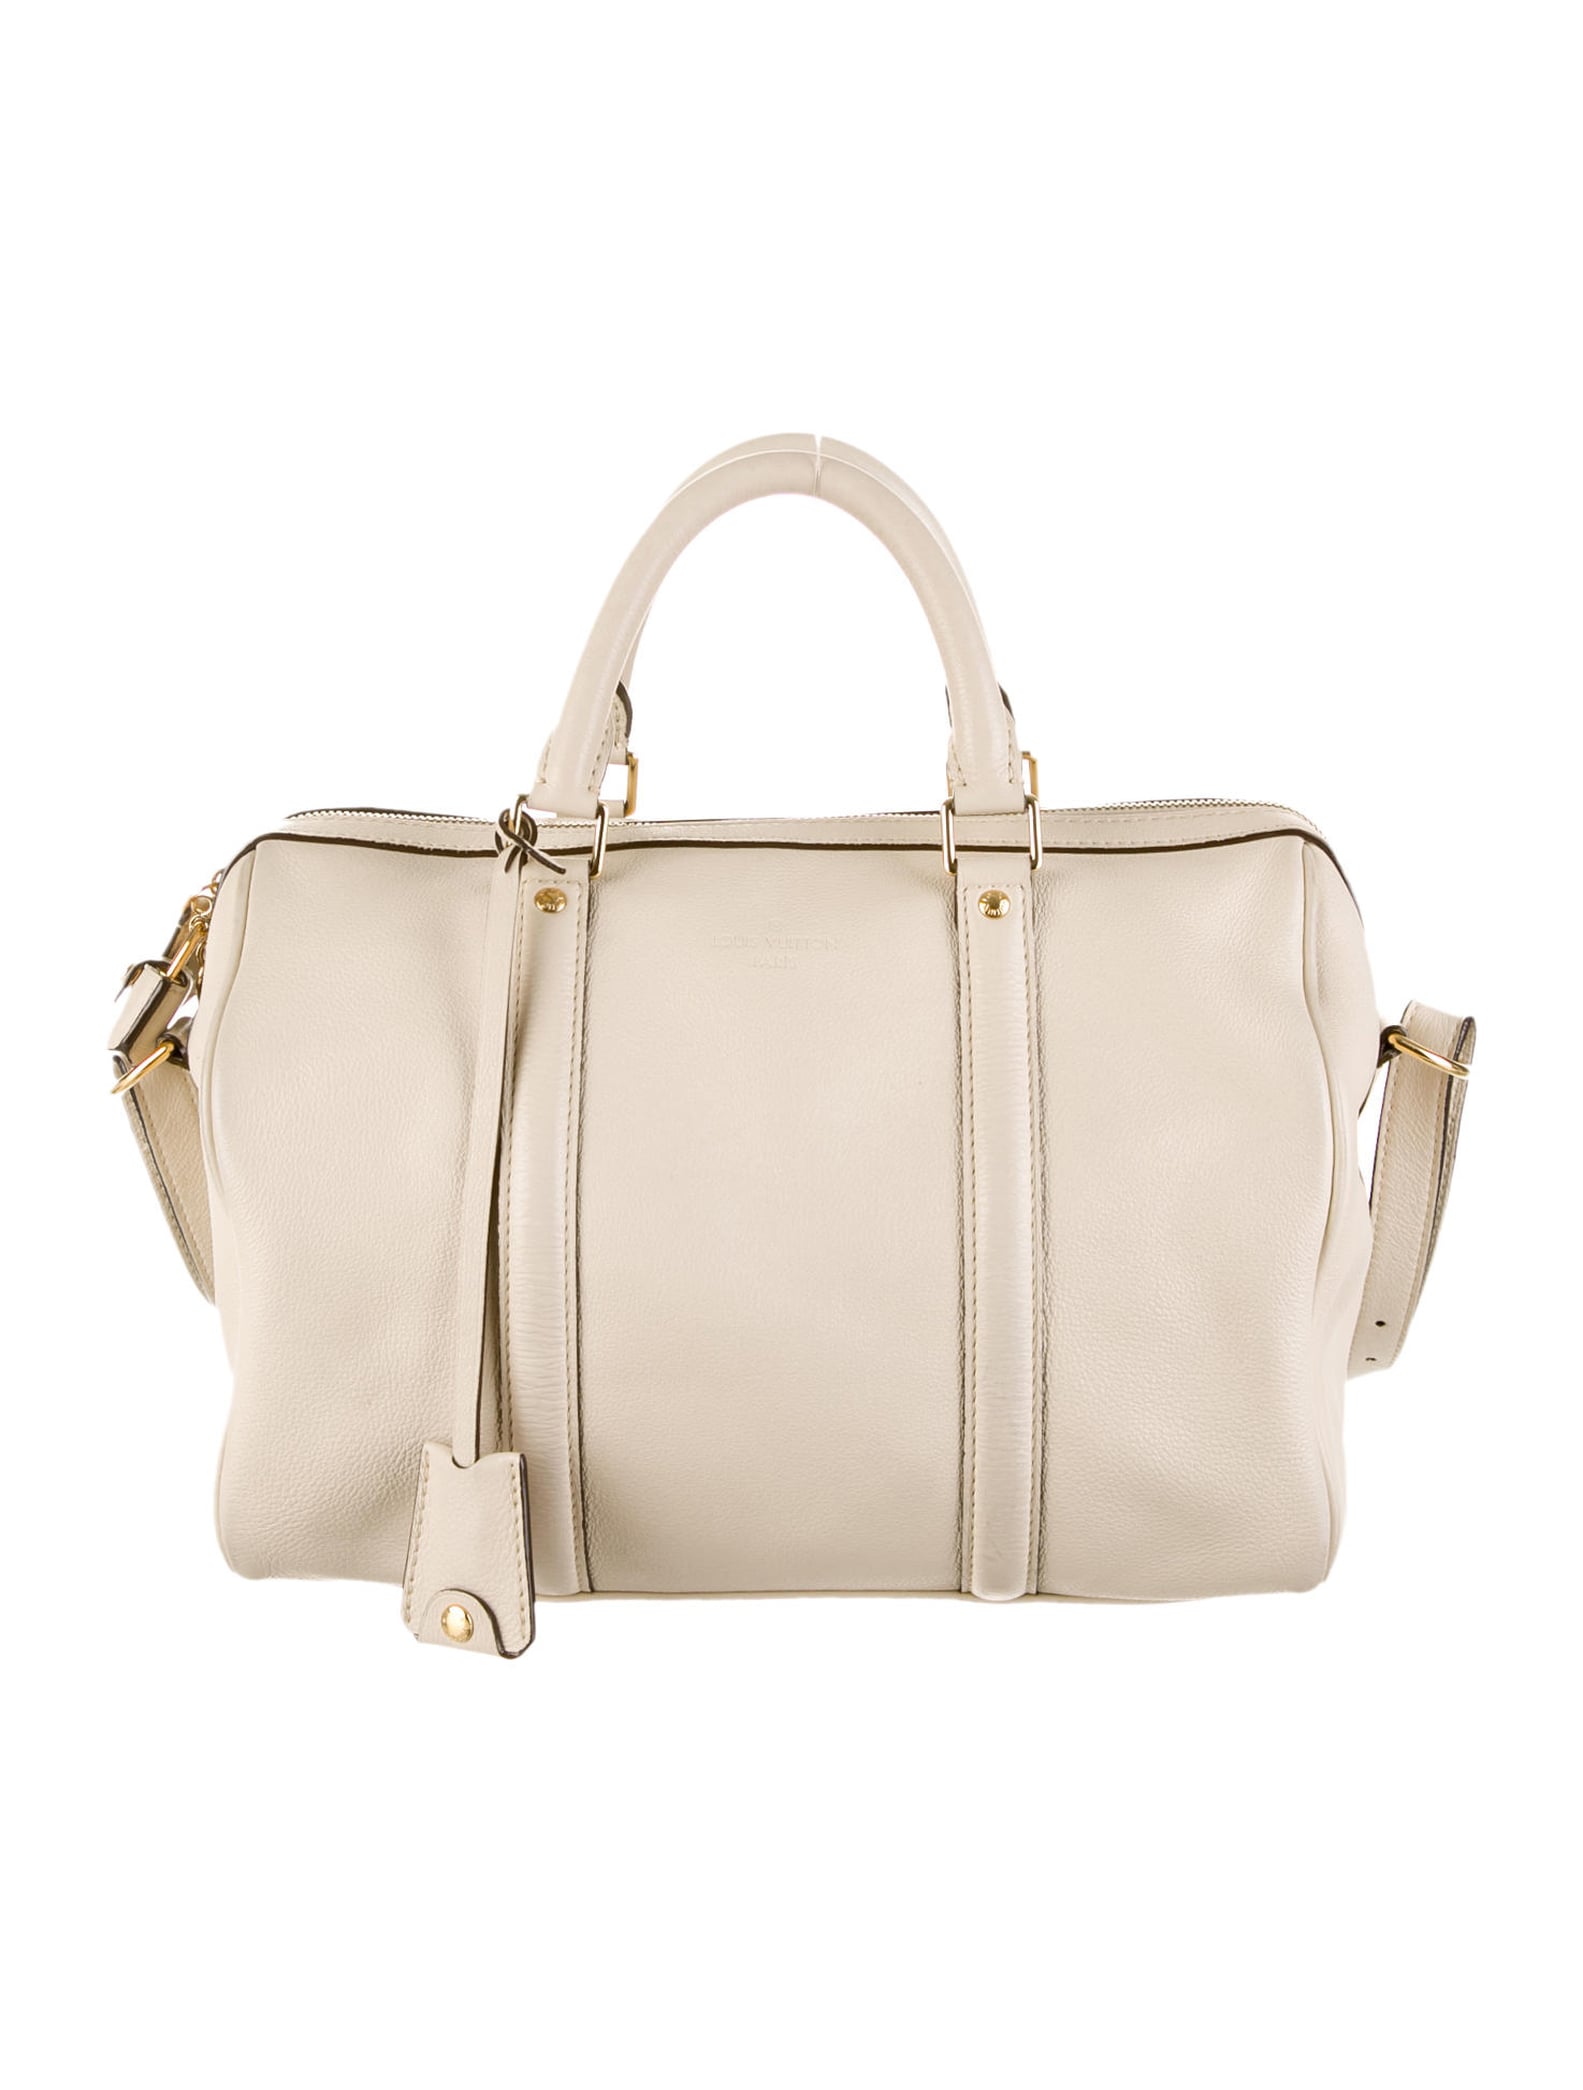 Handbags Named After Celebrities | POPSUGAR Fashion